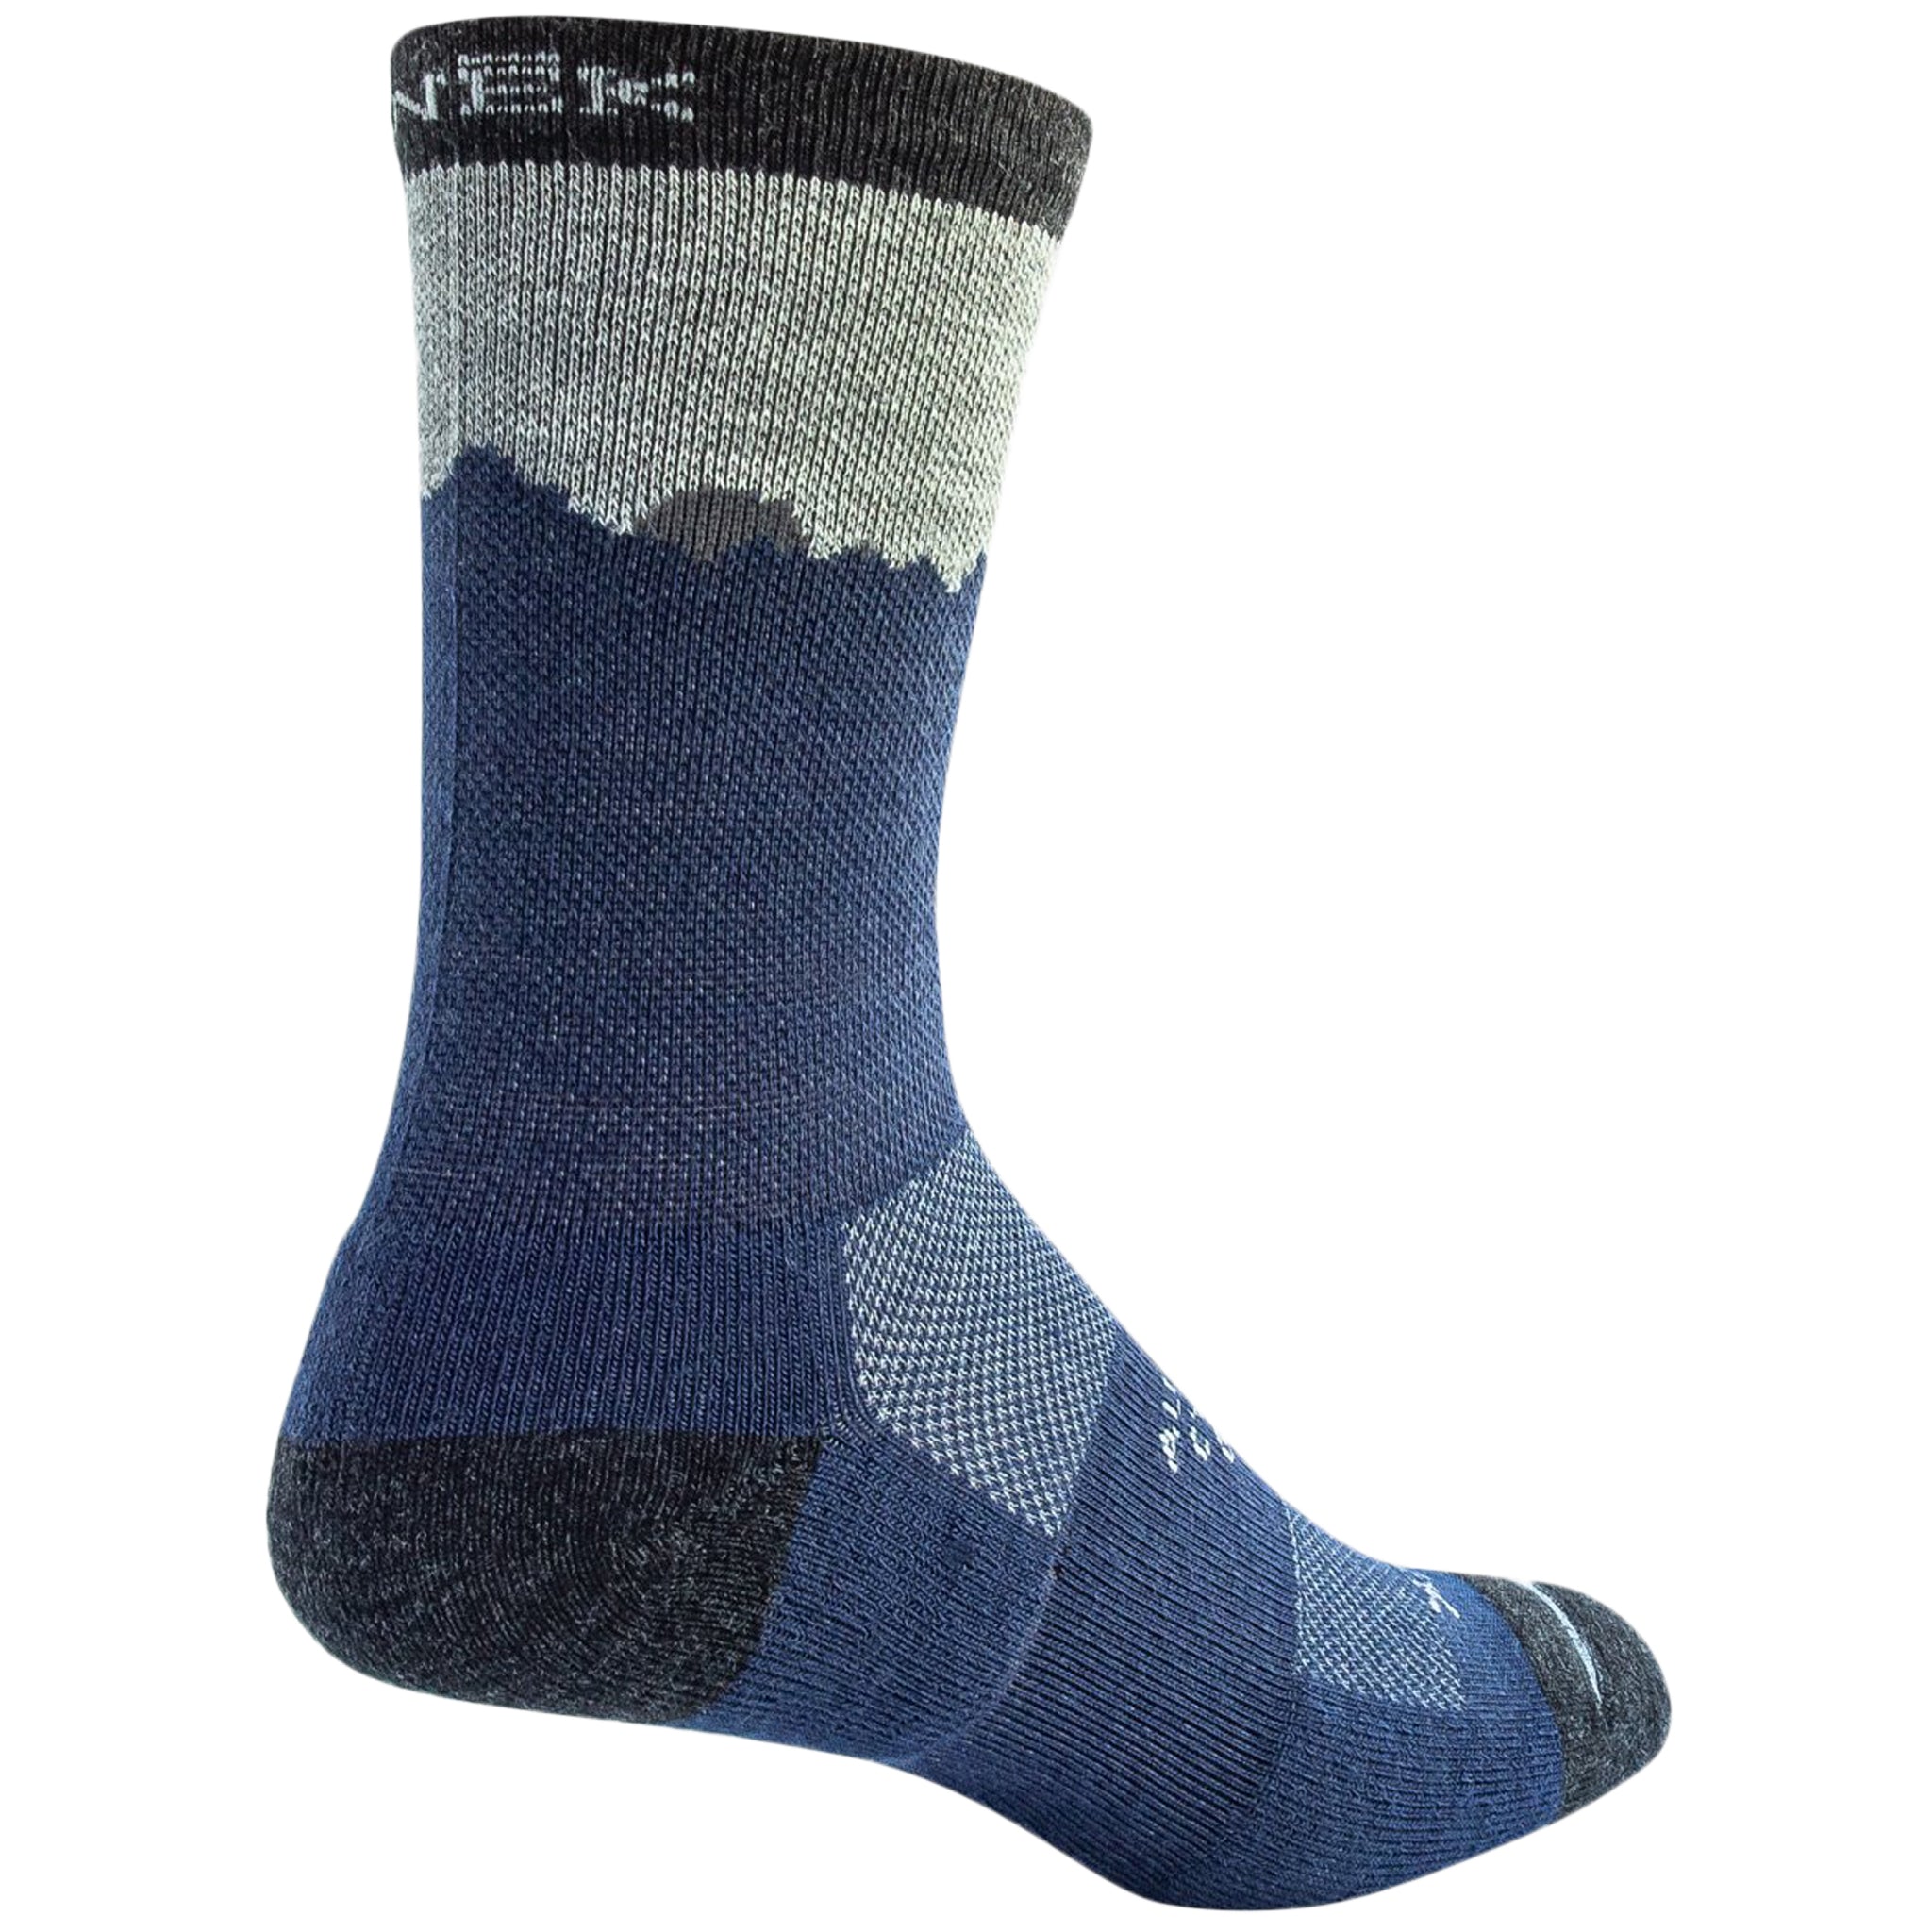 Snek Merino Wasatch Sock Blue/Gray 9-12